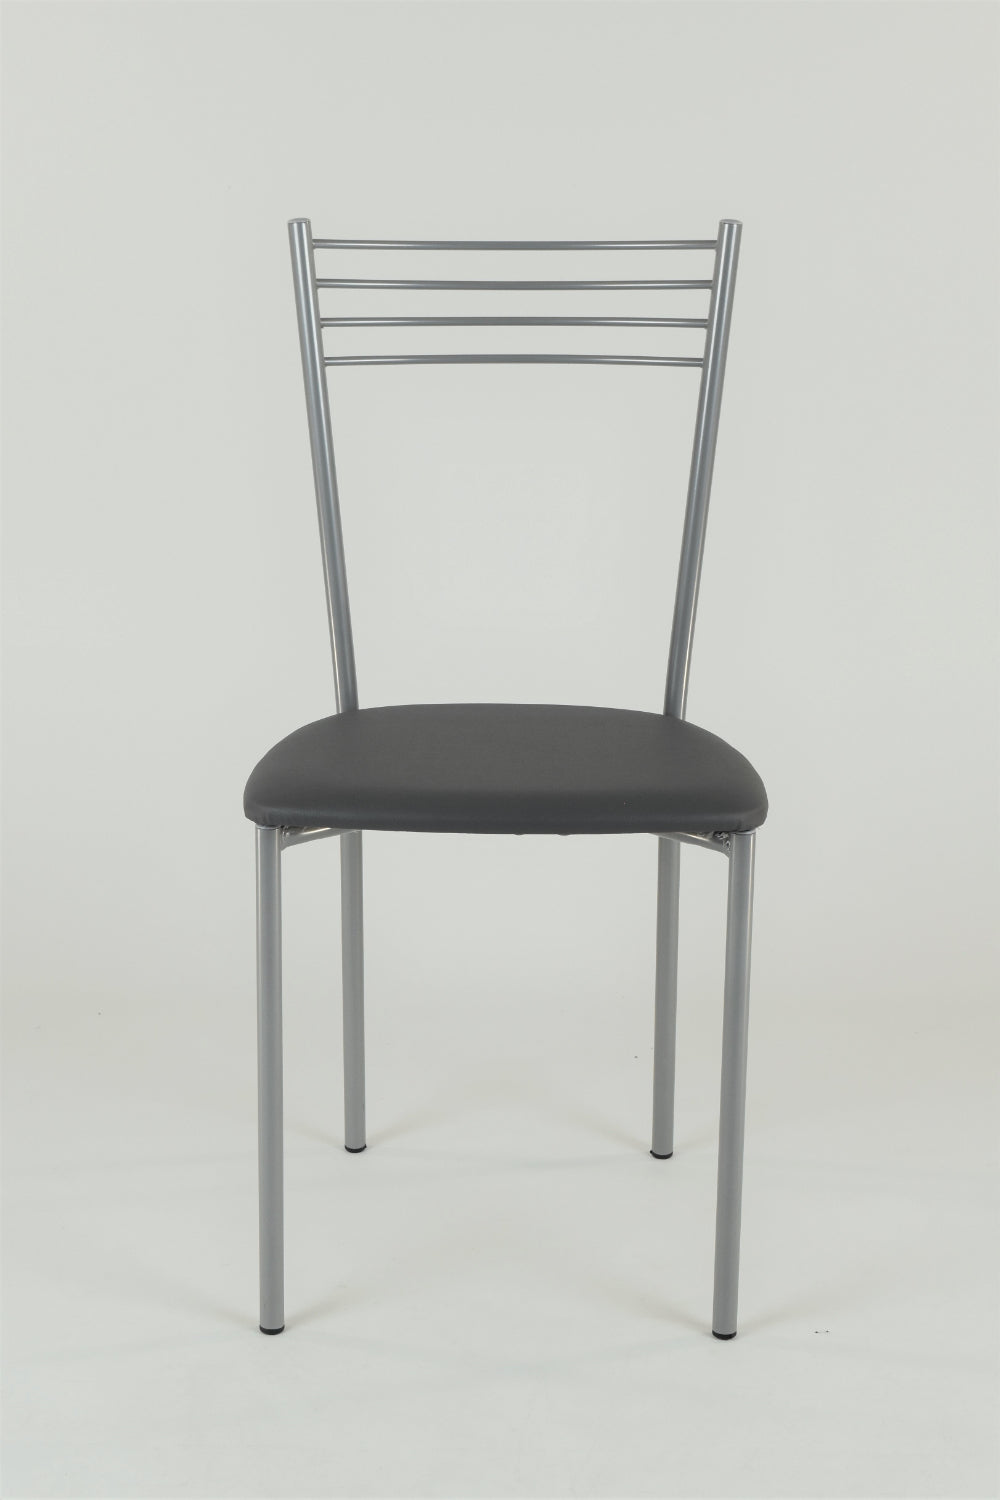 Tommychairs - Set 4 sillas de Cocina y Restaurante Elena, Estructura en Acero Pintado Aluminio, Asiento en Polipiel Color Gris Oscuro